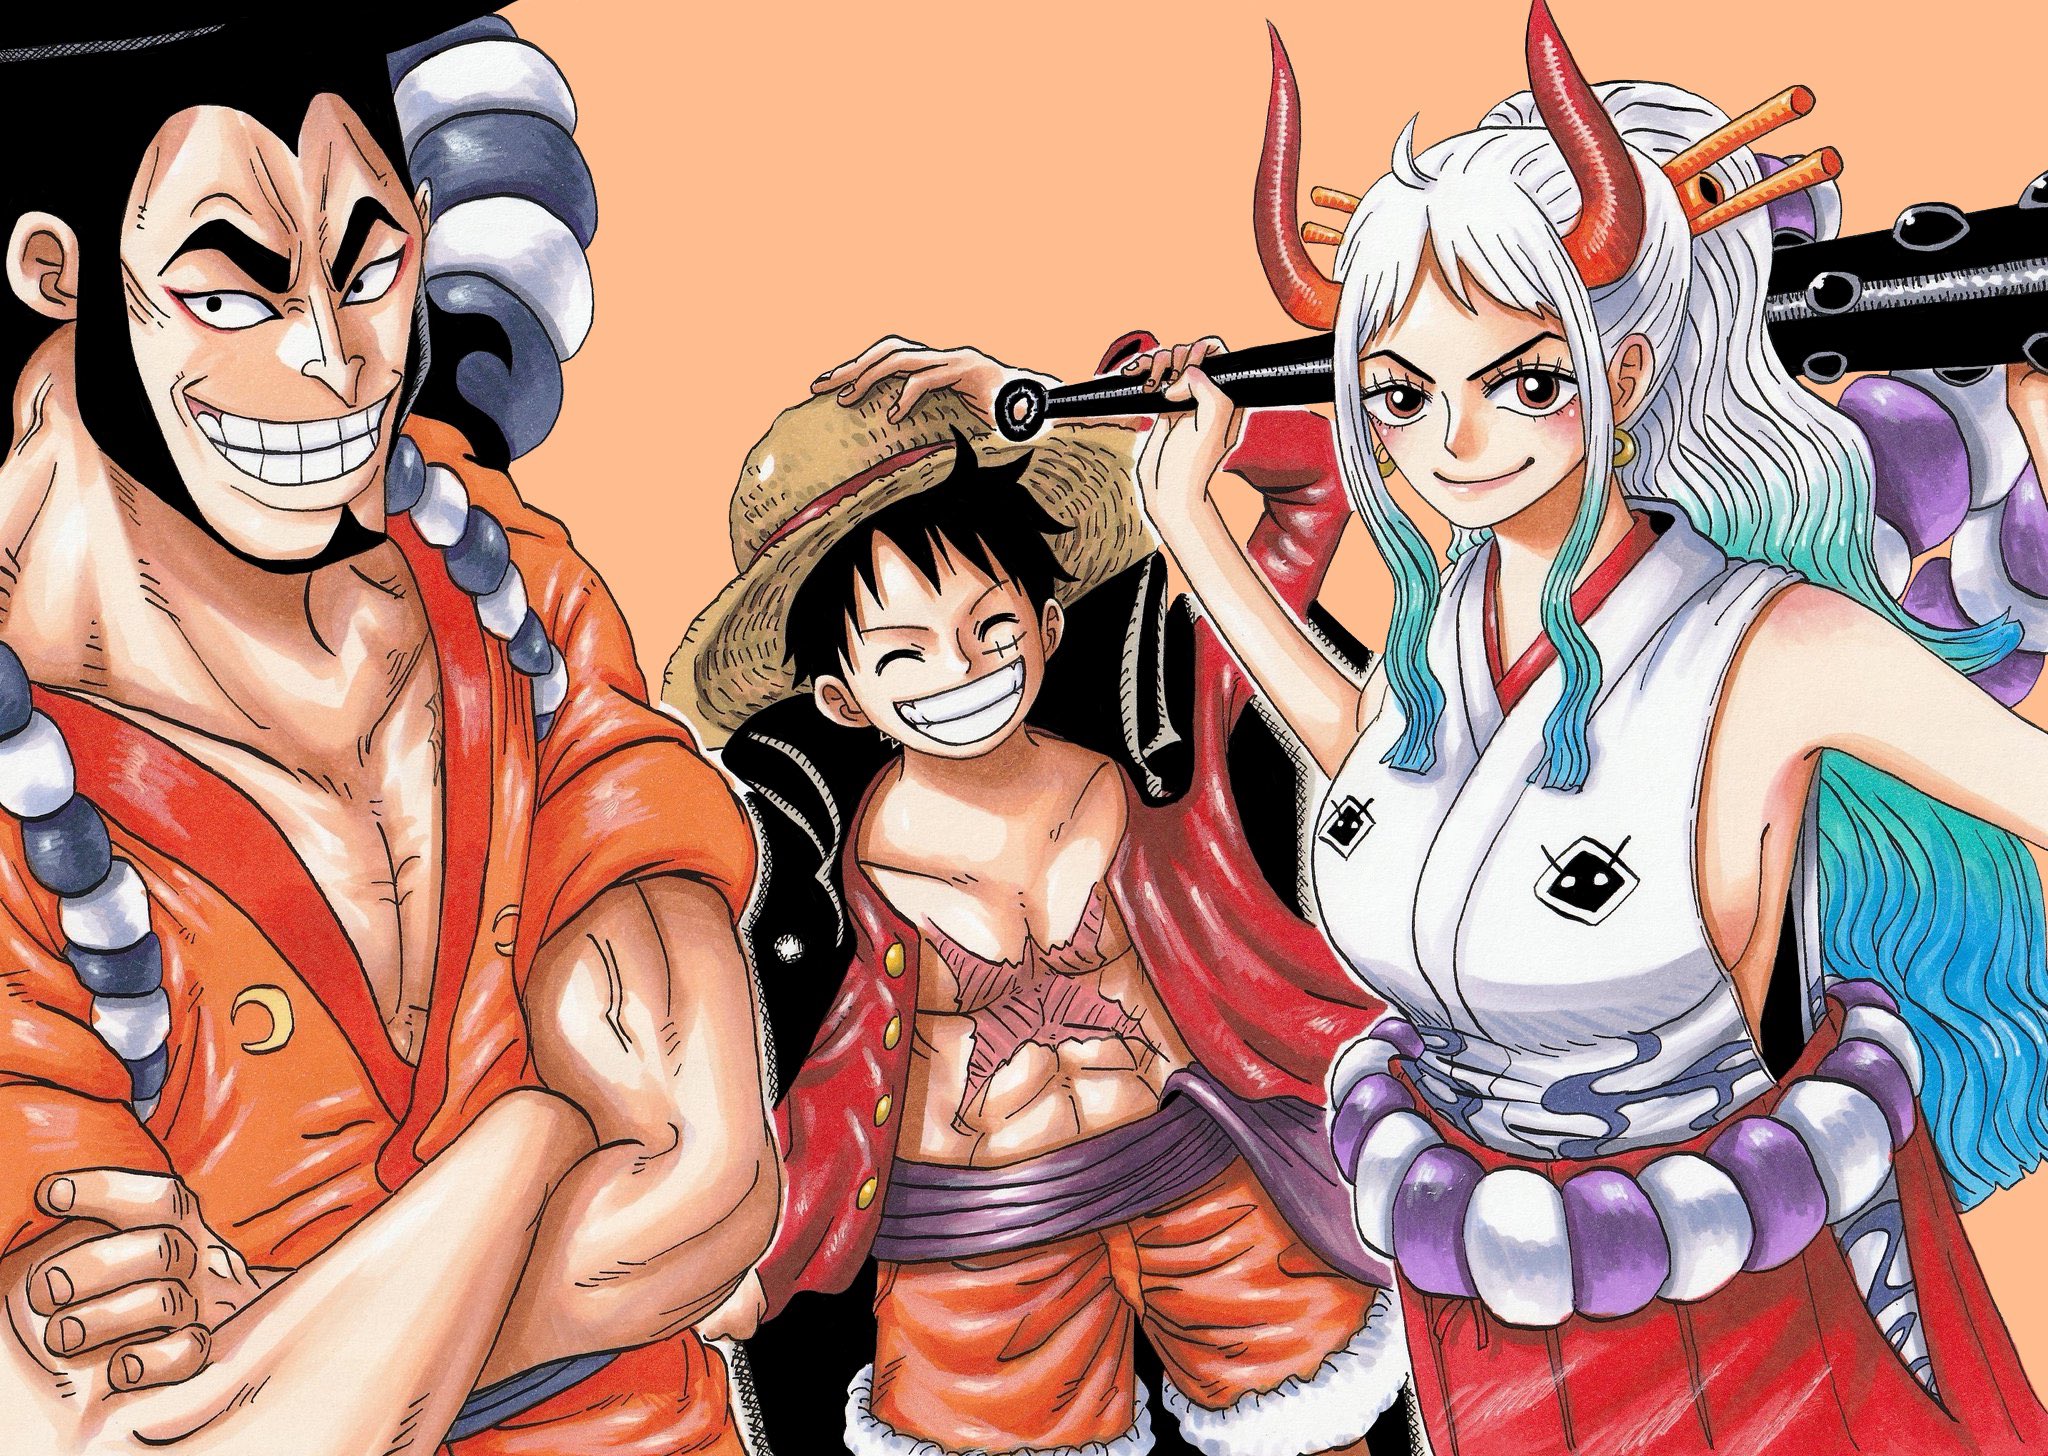 Kozuki Oden Yamato One Piece Hd Wallpaper Background Image 48x1456